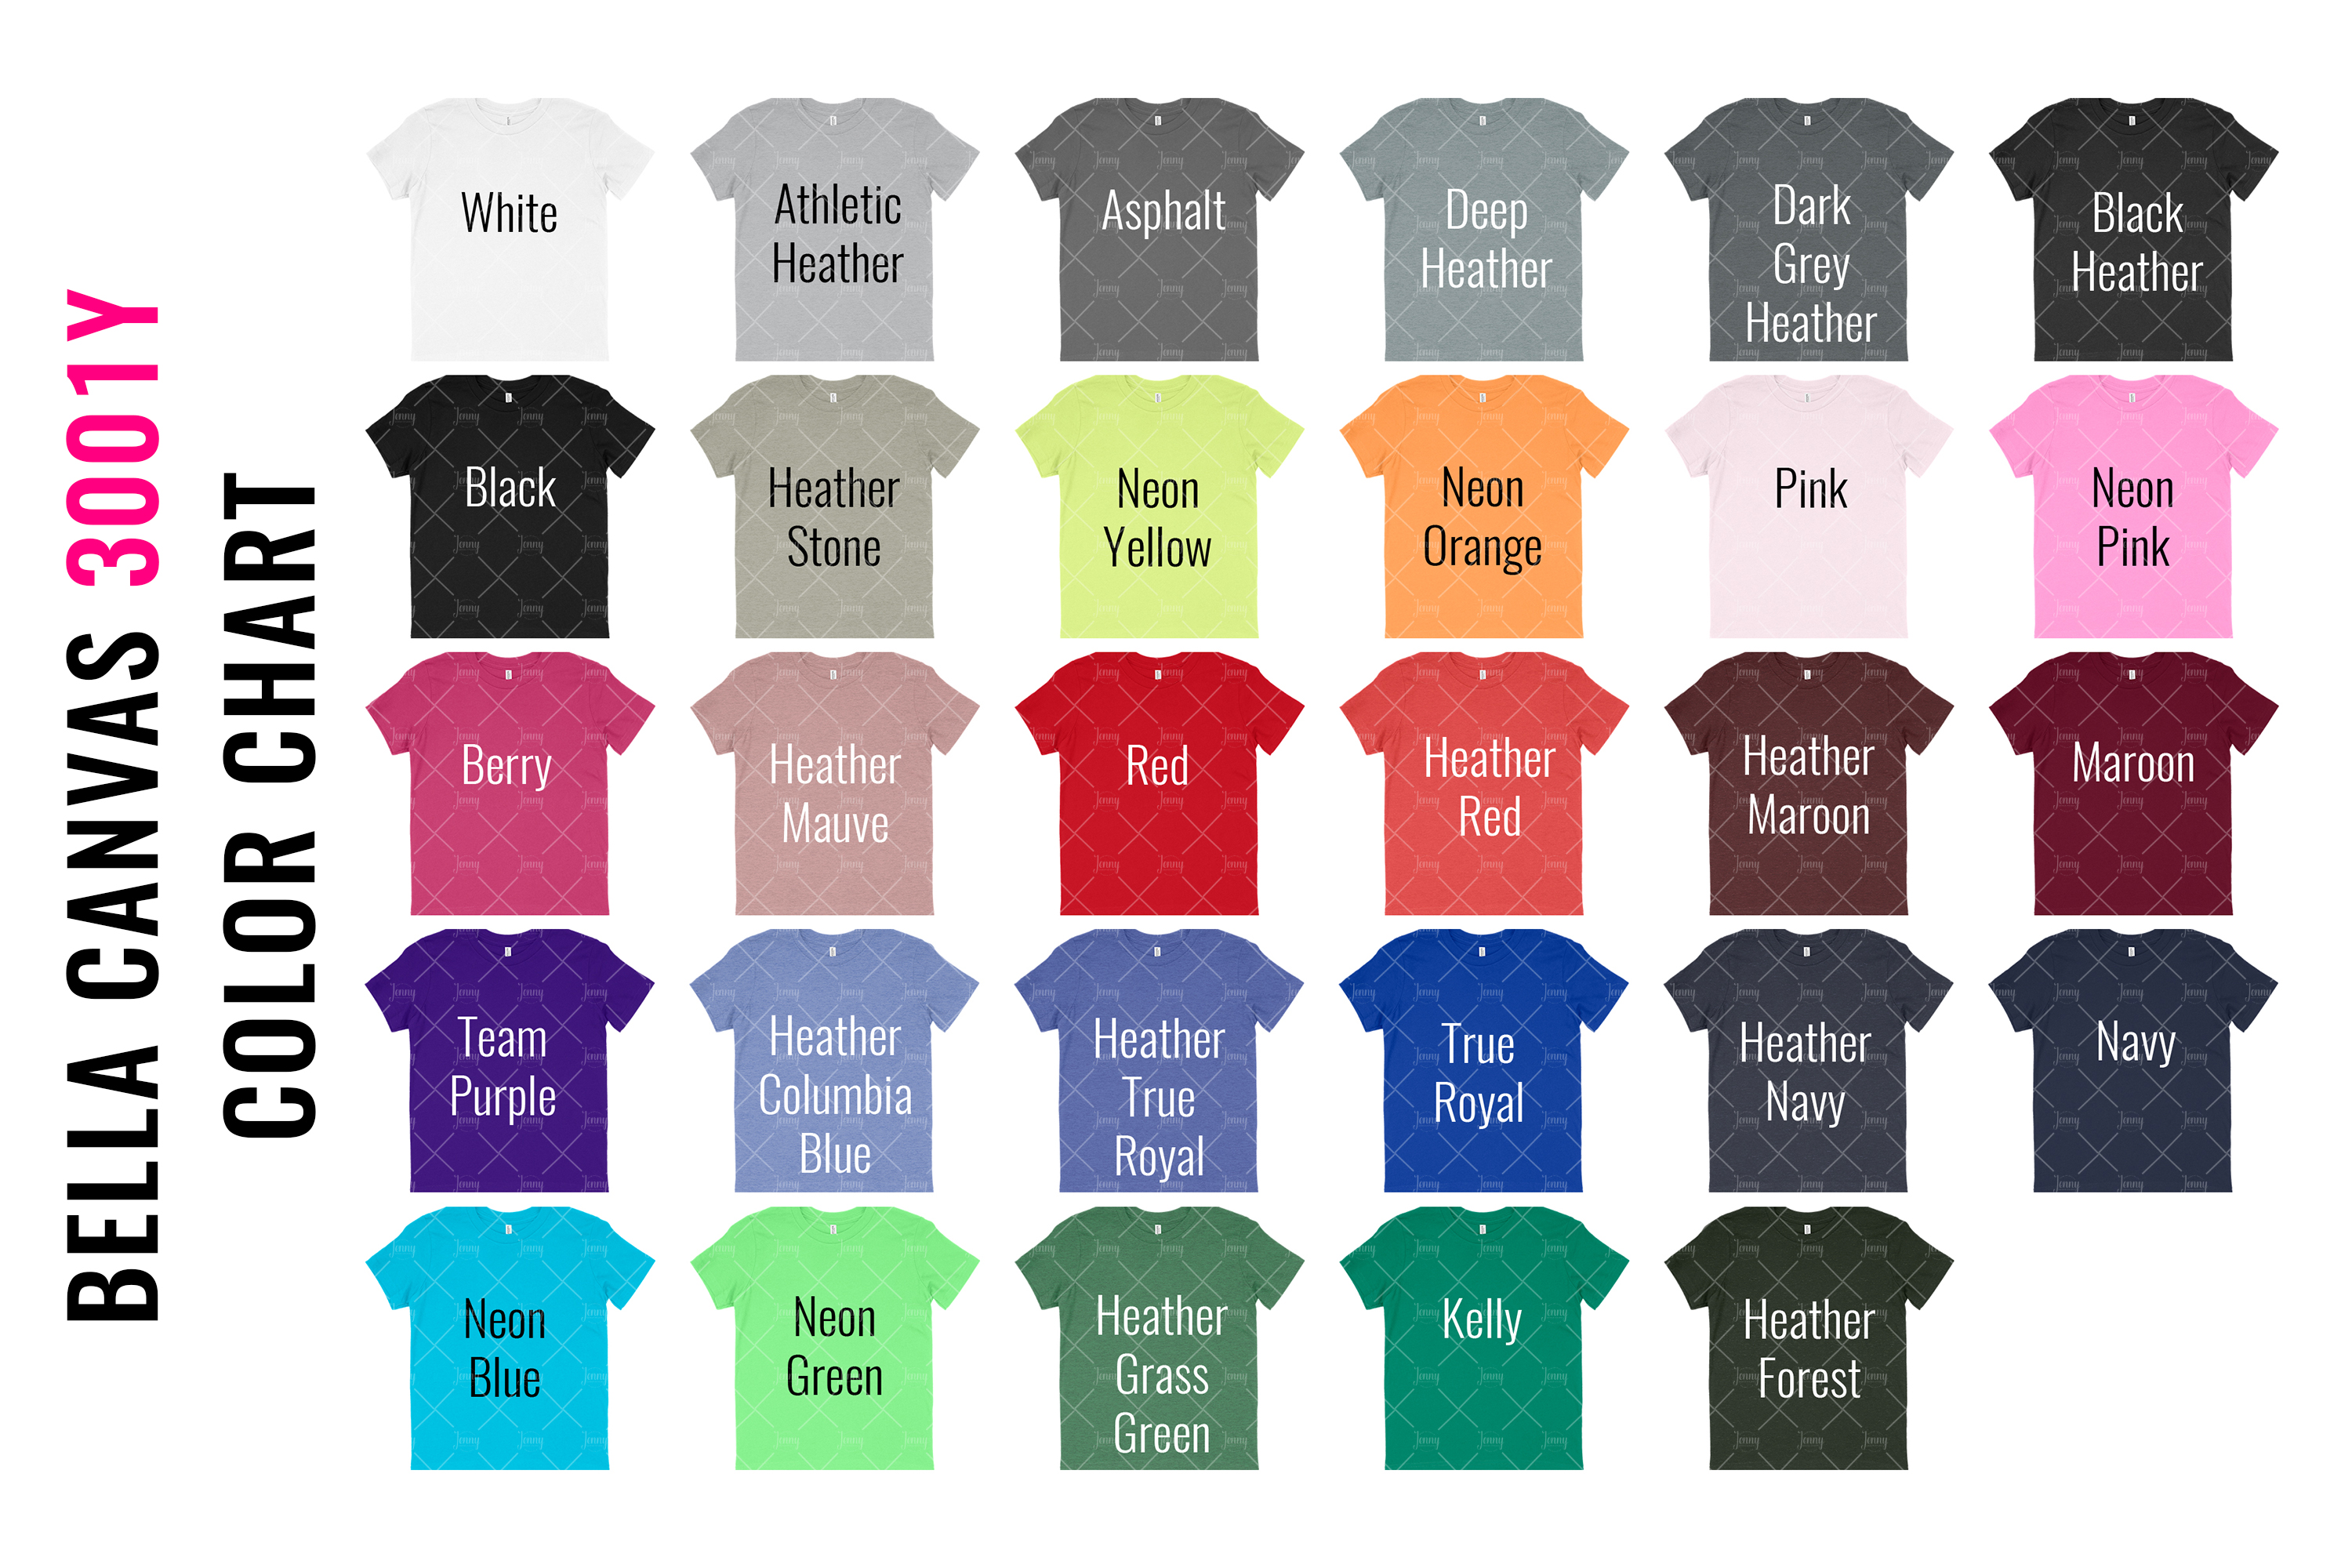 Bella Canvas T Shirt Color Chart